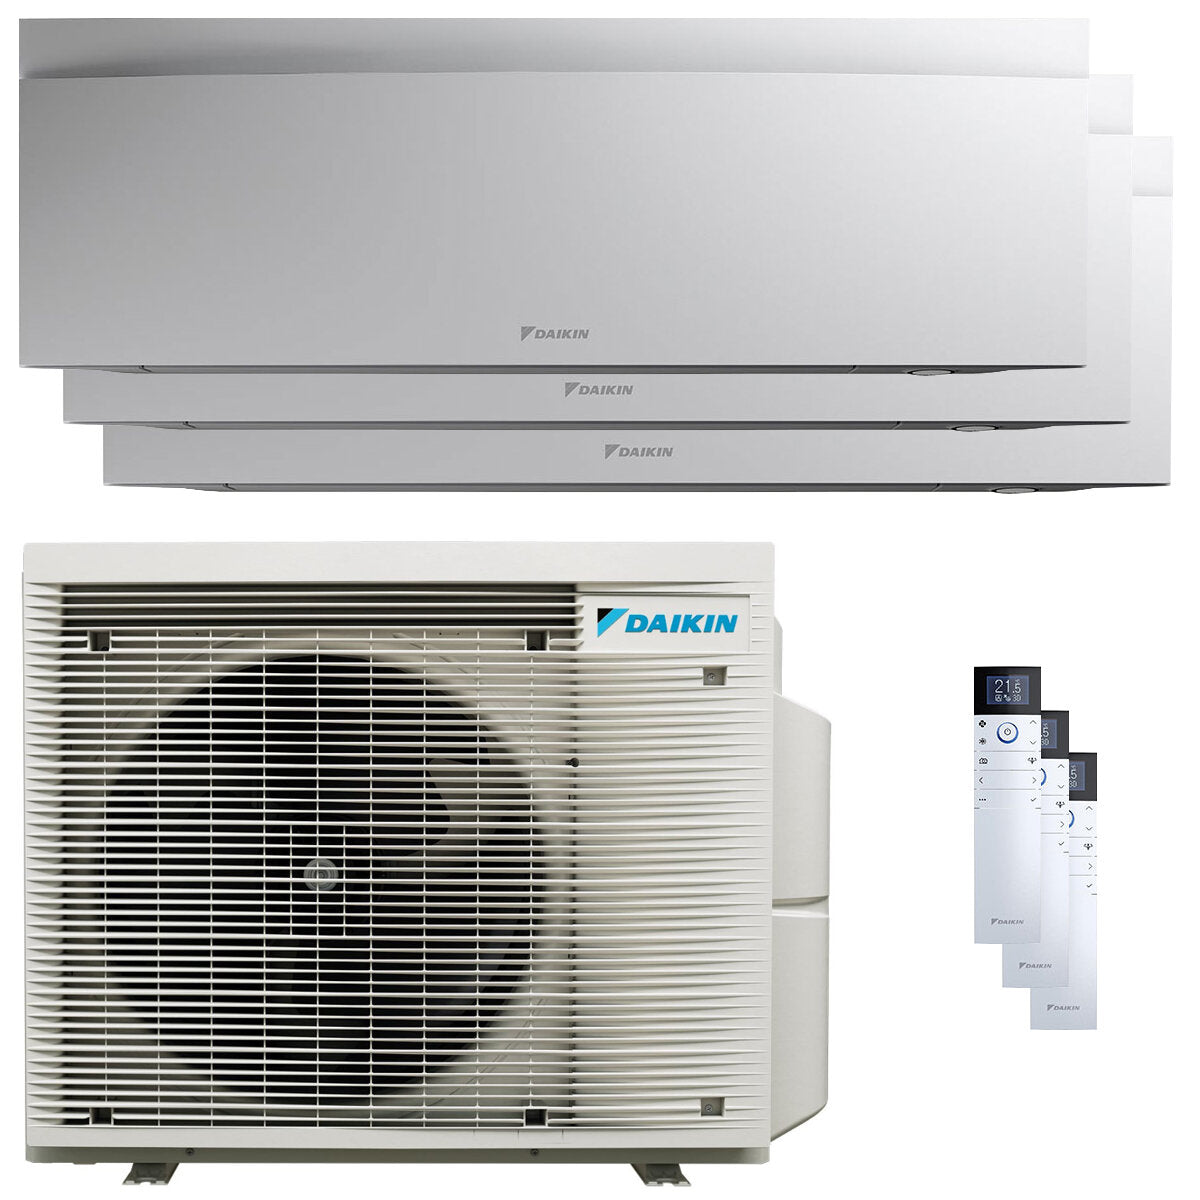 Daikin Emura 3 trial split air conditioner 7000+9000+15000 BTU inverter A+ wifi outdoor unit 6.8 kW White